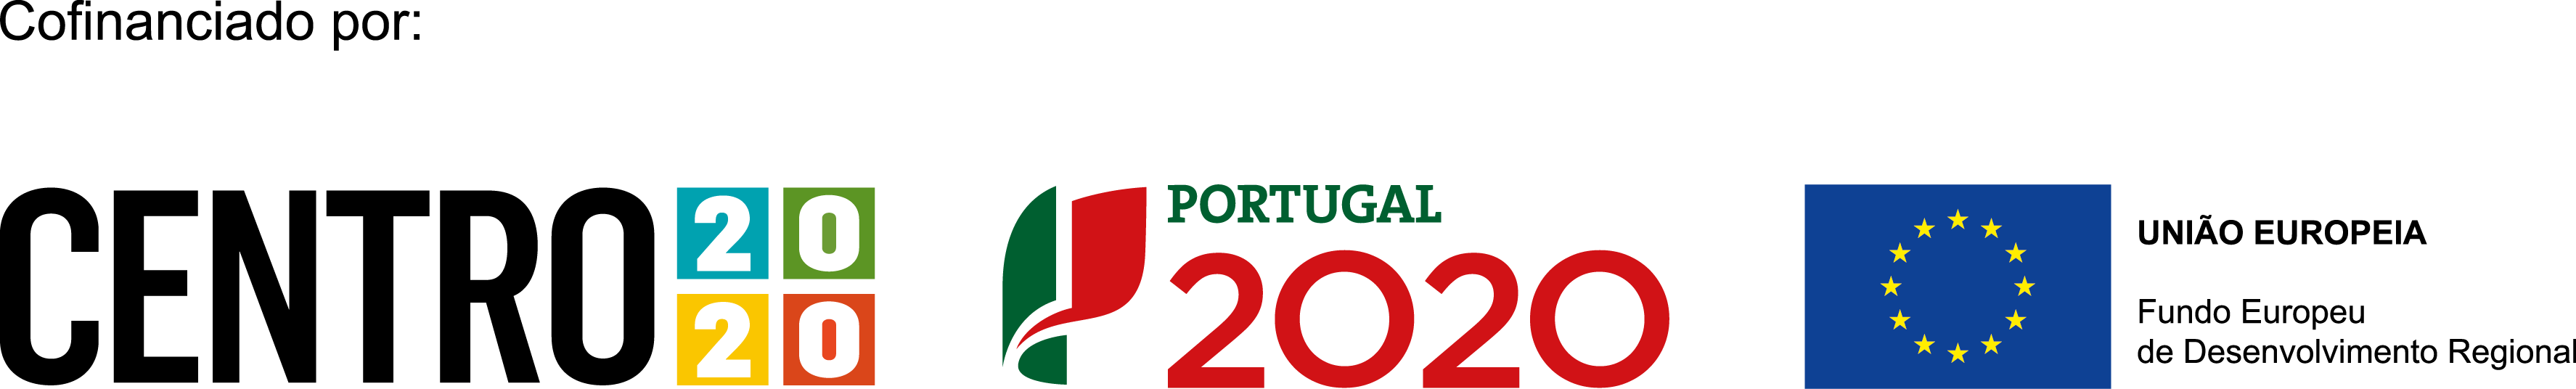 Logos de fundos comunitários europeus, portugal 2020